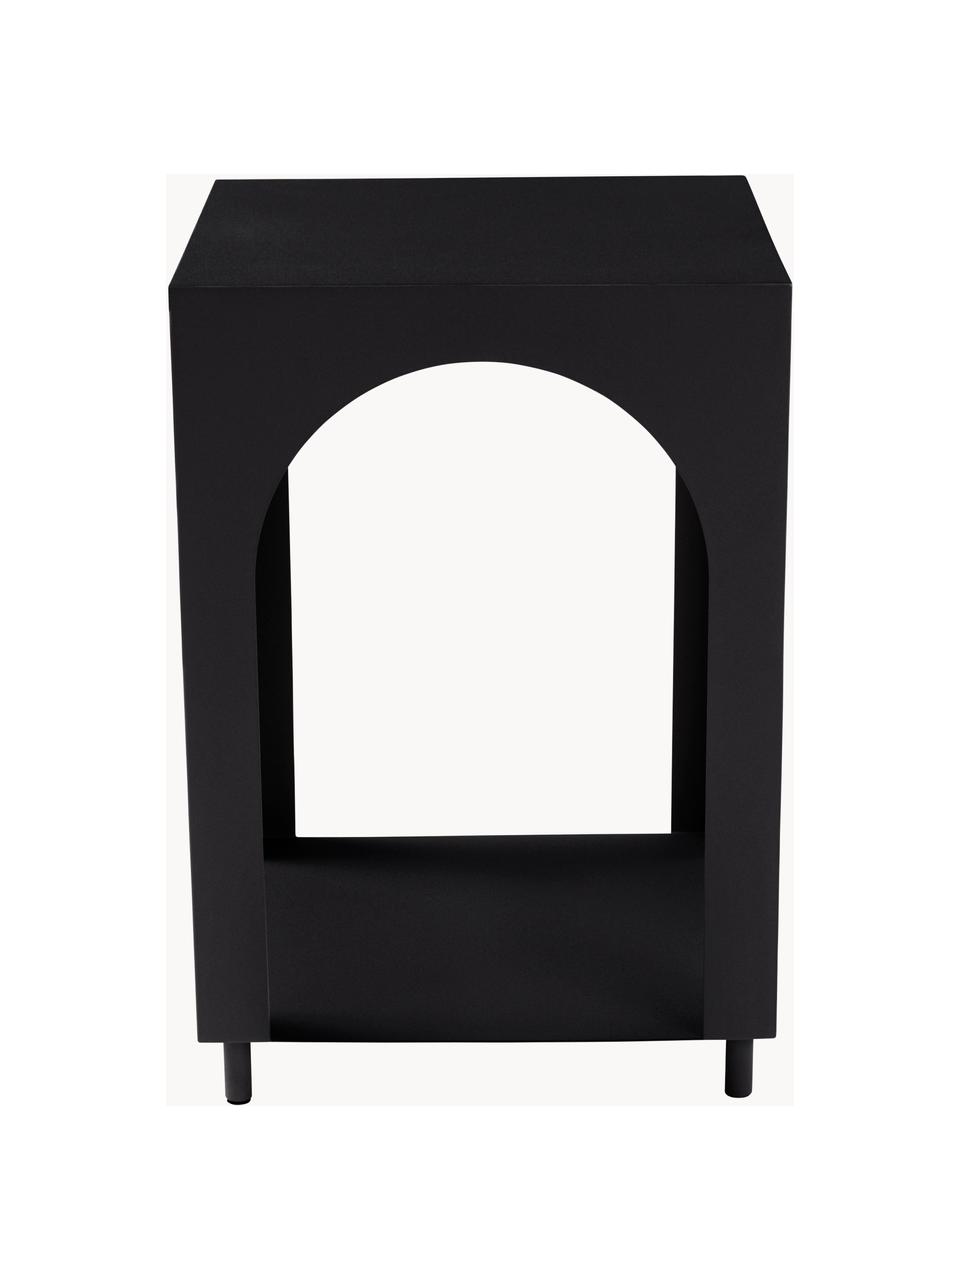 Odkladací stolík s dodatočným odkladacím priestorom Vesta, MDF-doska strednej hustoty, jaseňová dyha, Drevo, čierna lakovaná, Š 40 x V 59 cm